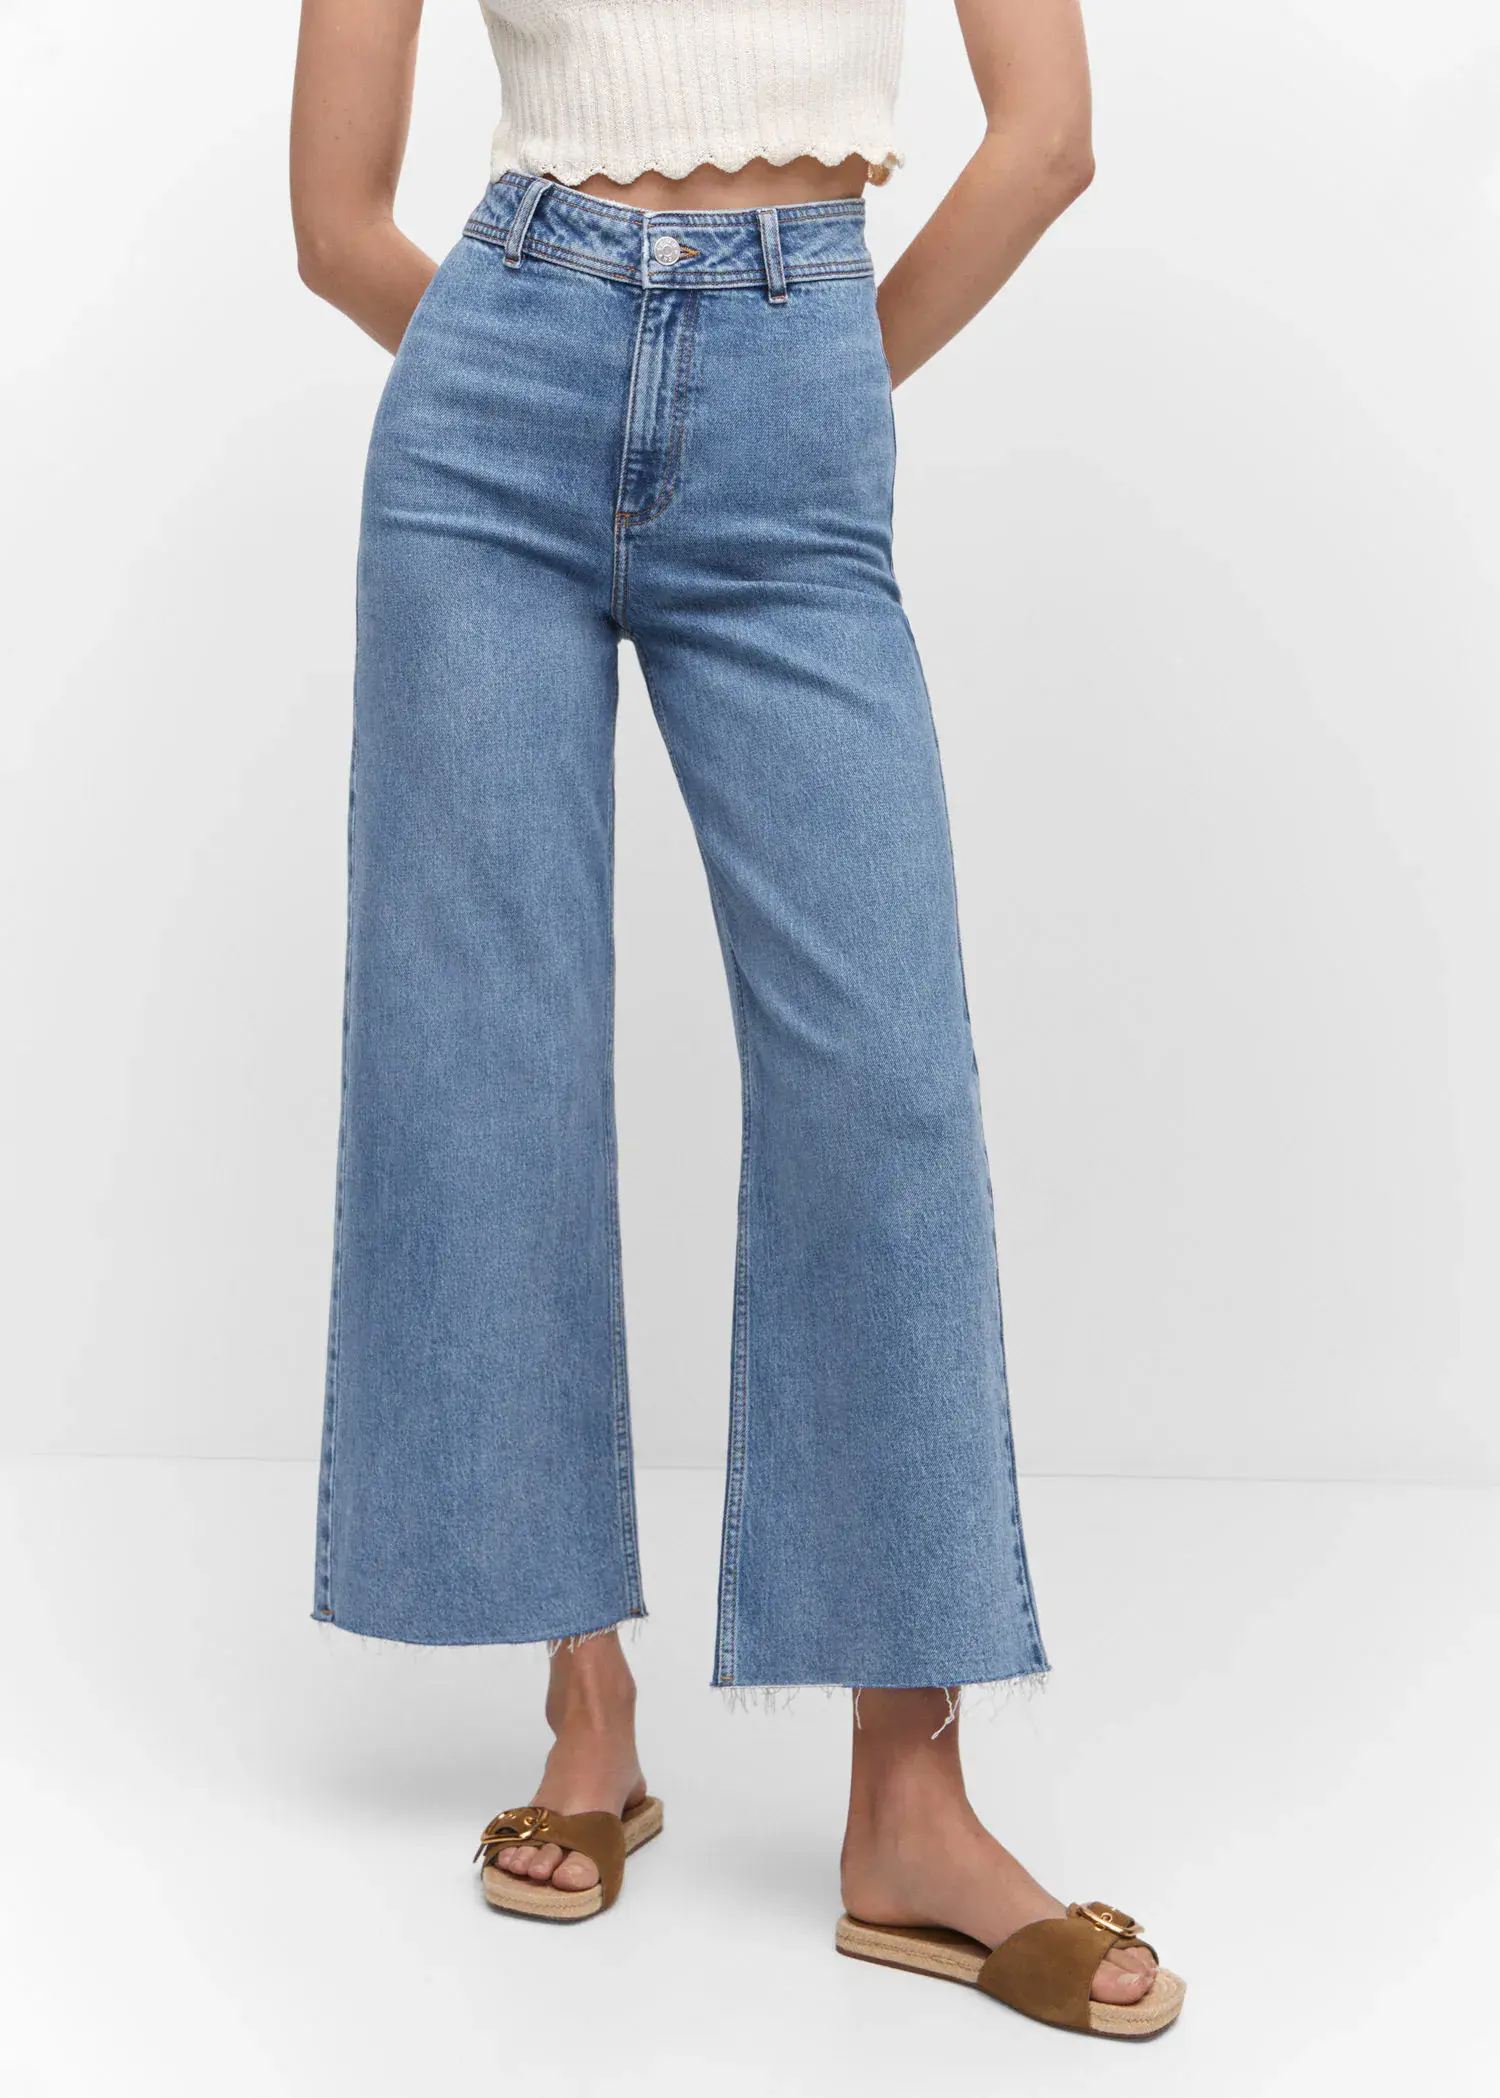 Mango Jupe-culotte jean taille haute. 1